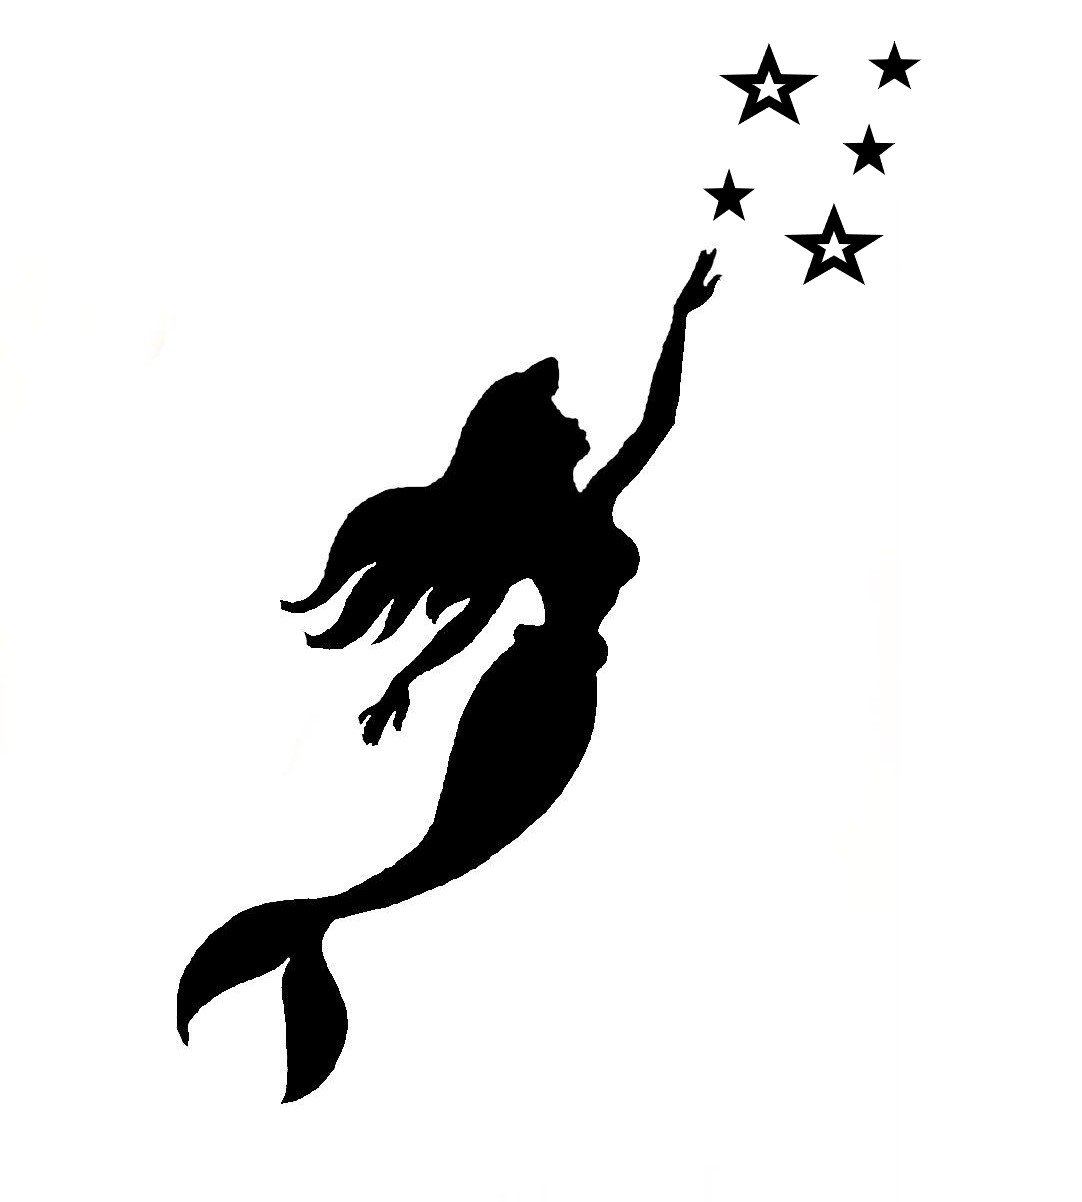 Mořská panna s hvězdami